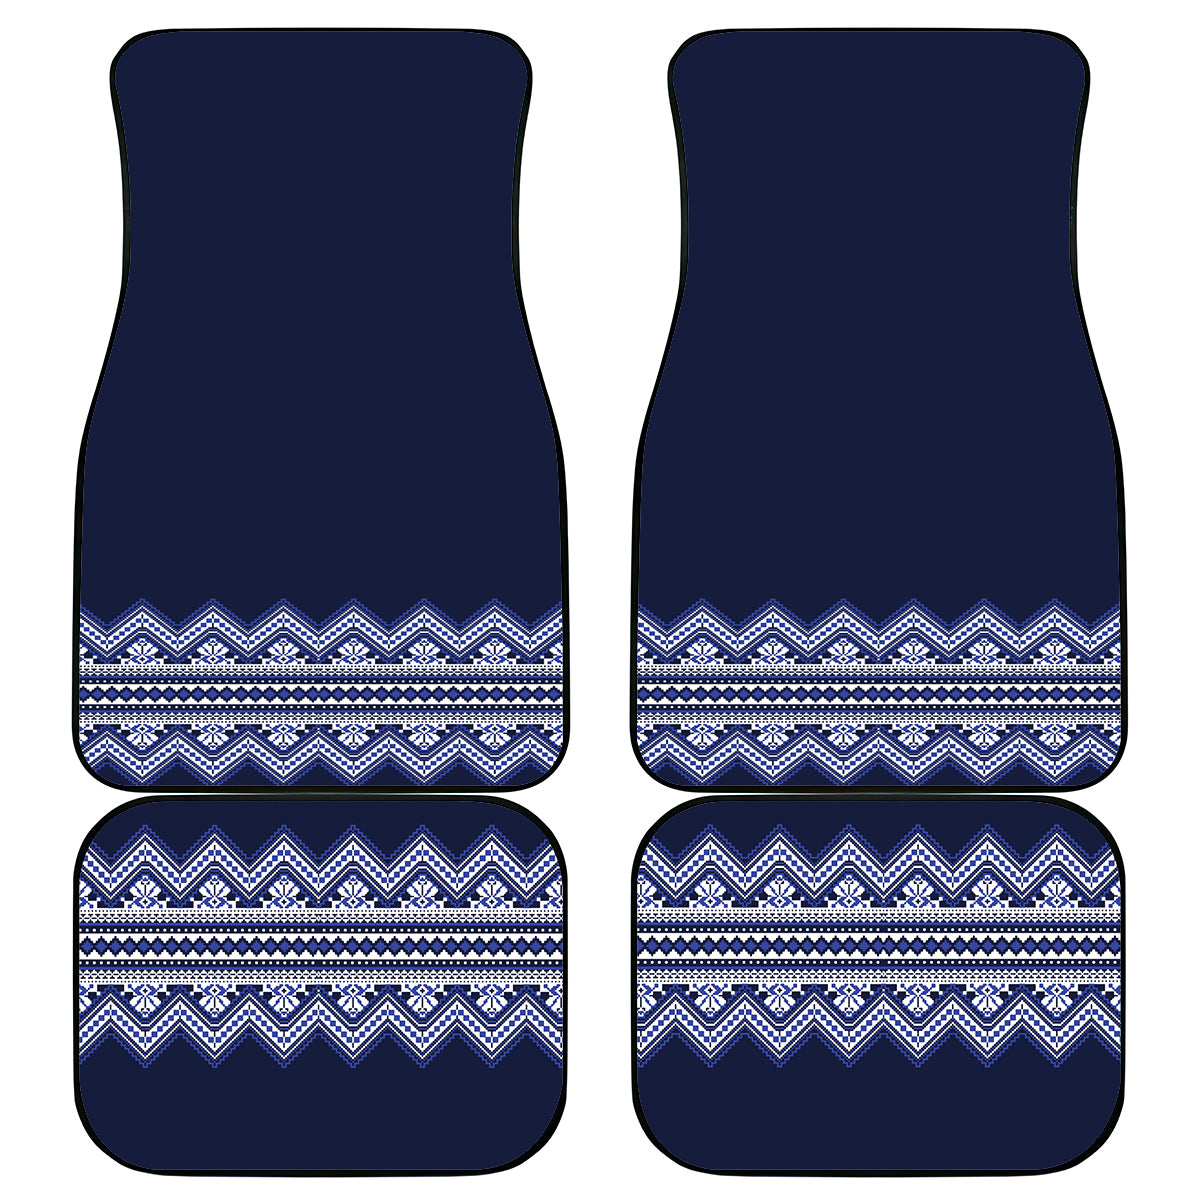 ukraine-folk-pattern-car-mats-ukrainian-navy-blue-version